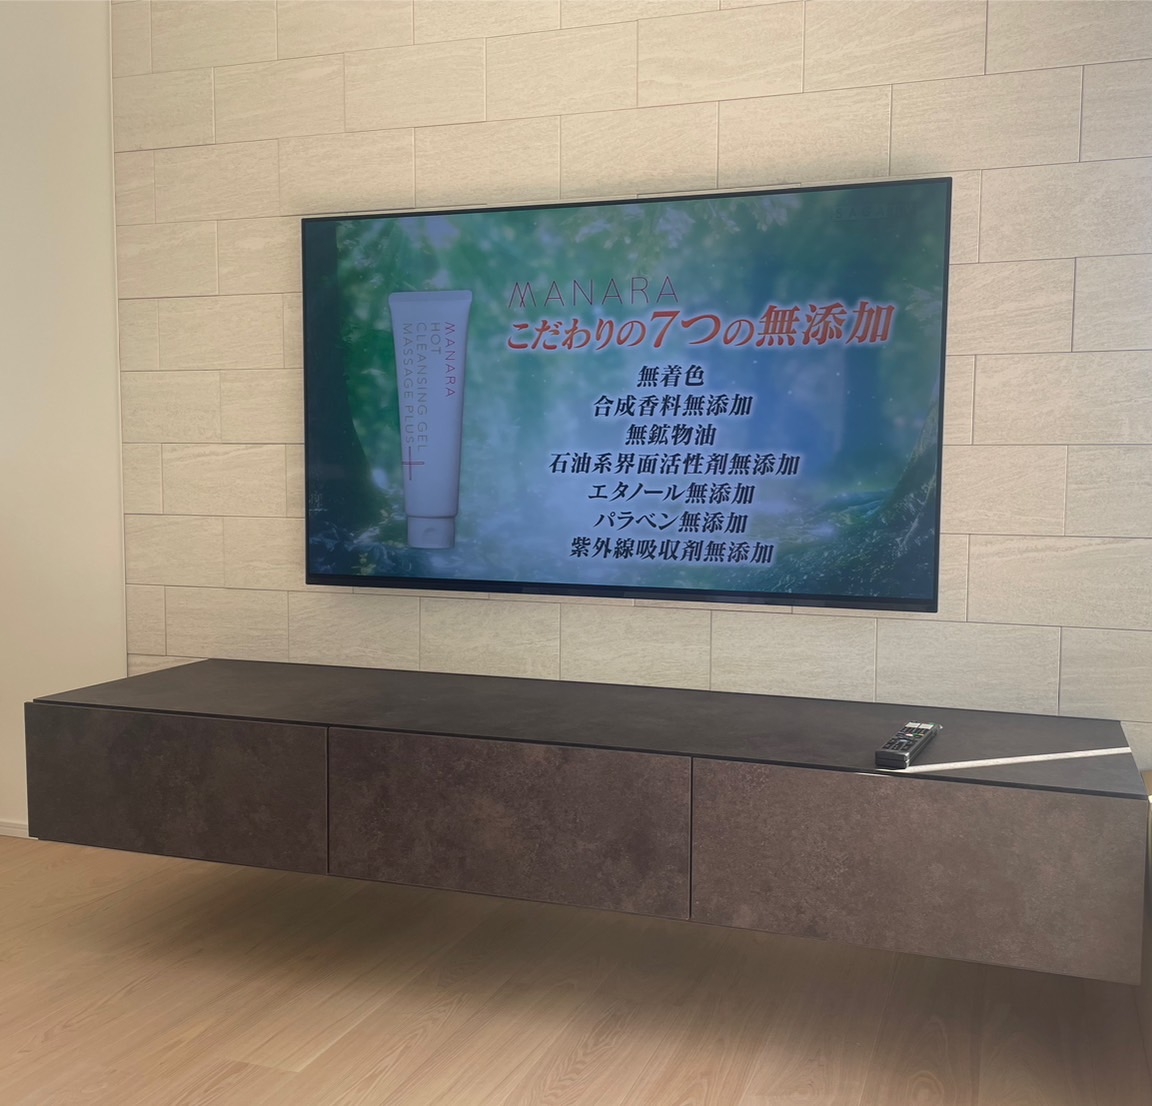 福岡でテレビの壁掛け・アンテナ・LAN工事を行うエヌエーアールブログ